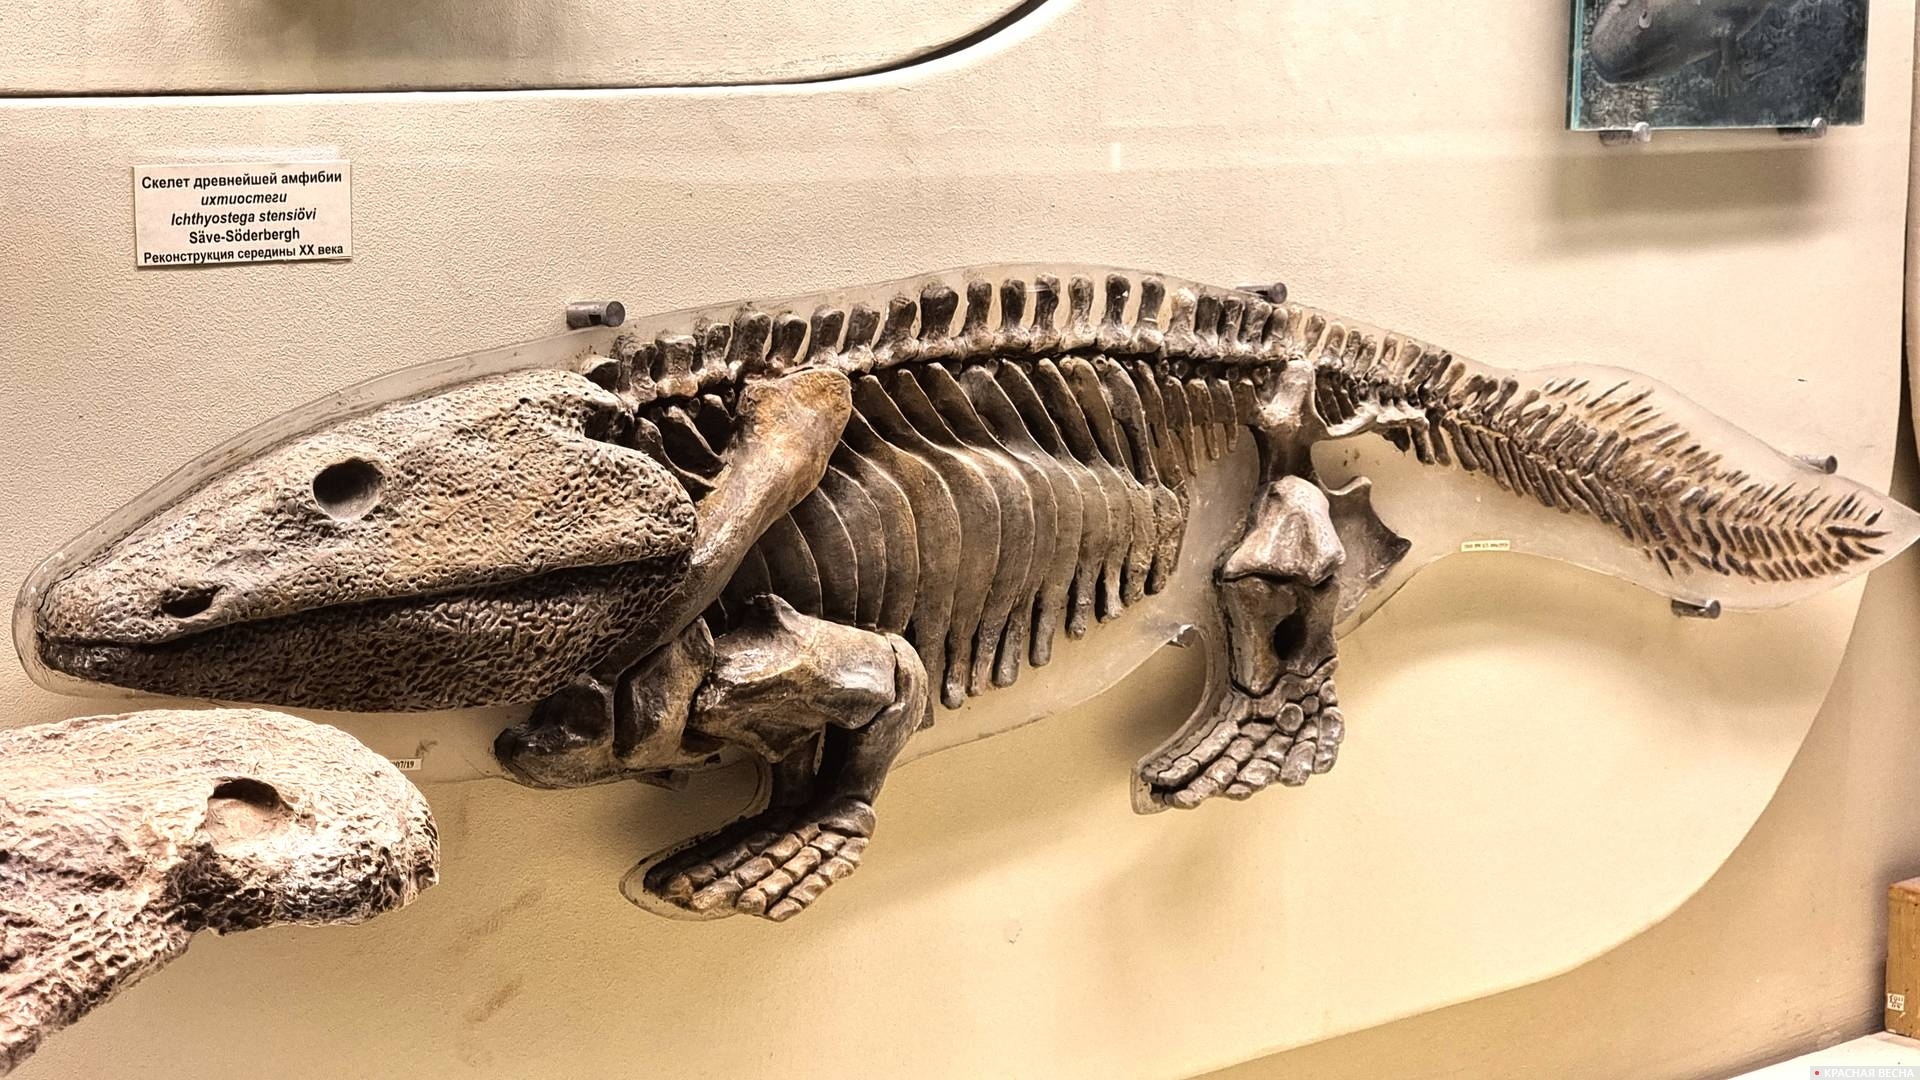 Ископаемый скелет пресмыкающегося. Музей палеонтологии им. Орлова